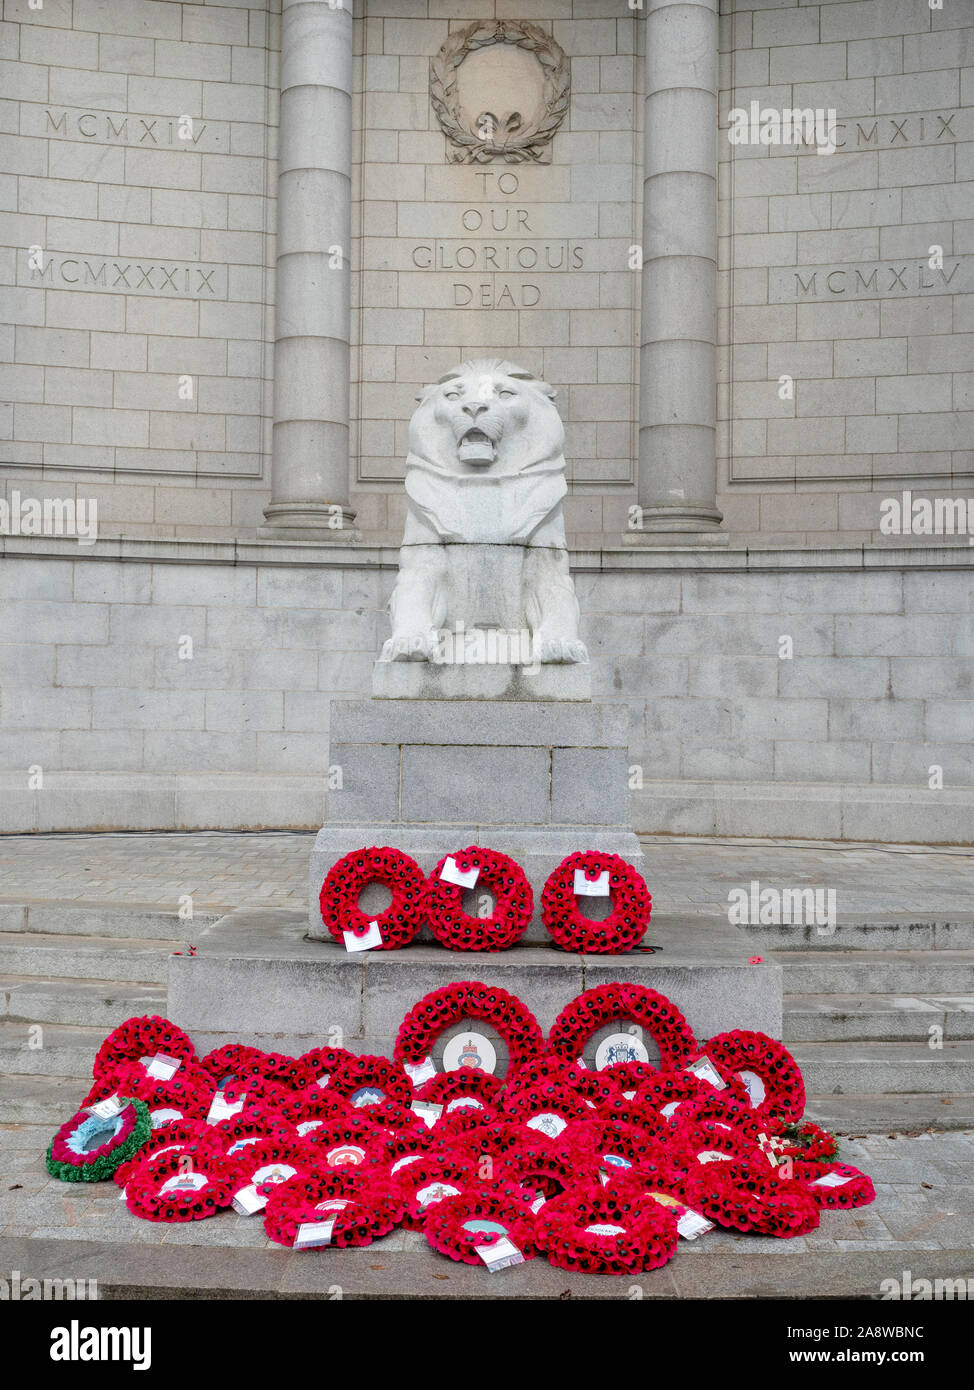 Aberdeen, Écosse - 10 Nov 2019 : coquelicot couronnes portées au Monument commémoratif de guerre Schoolhill à Aberdeen au cours de la cérémonie du Jour du Souvenir. Banque D'Images